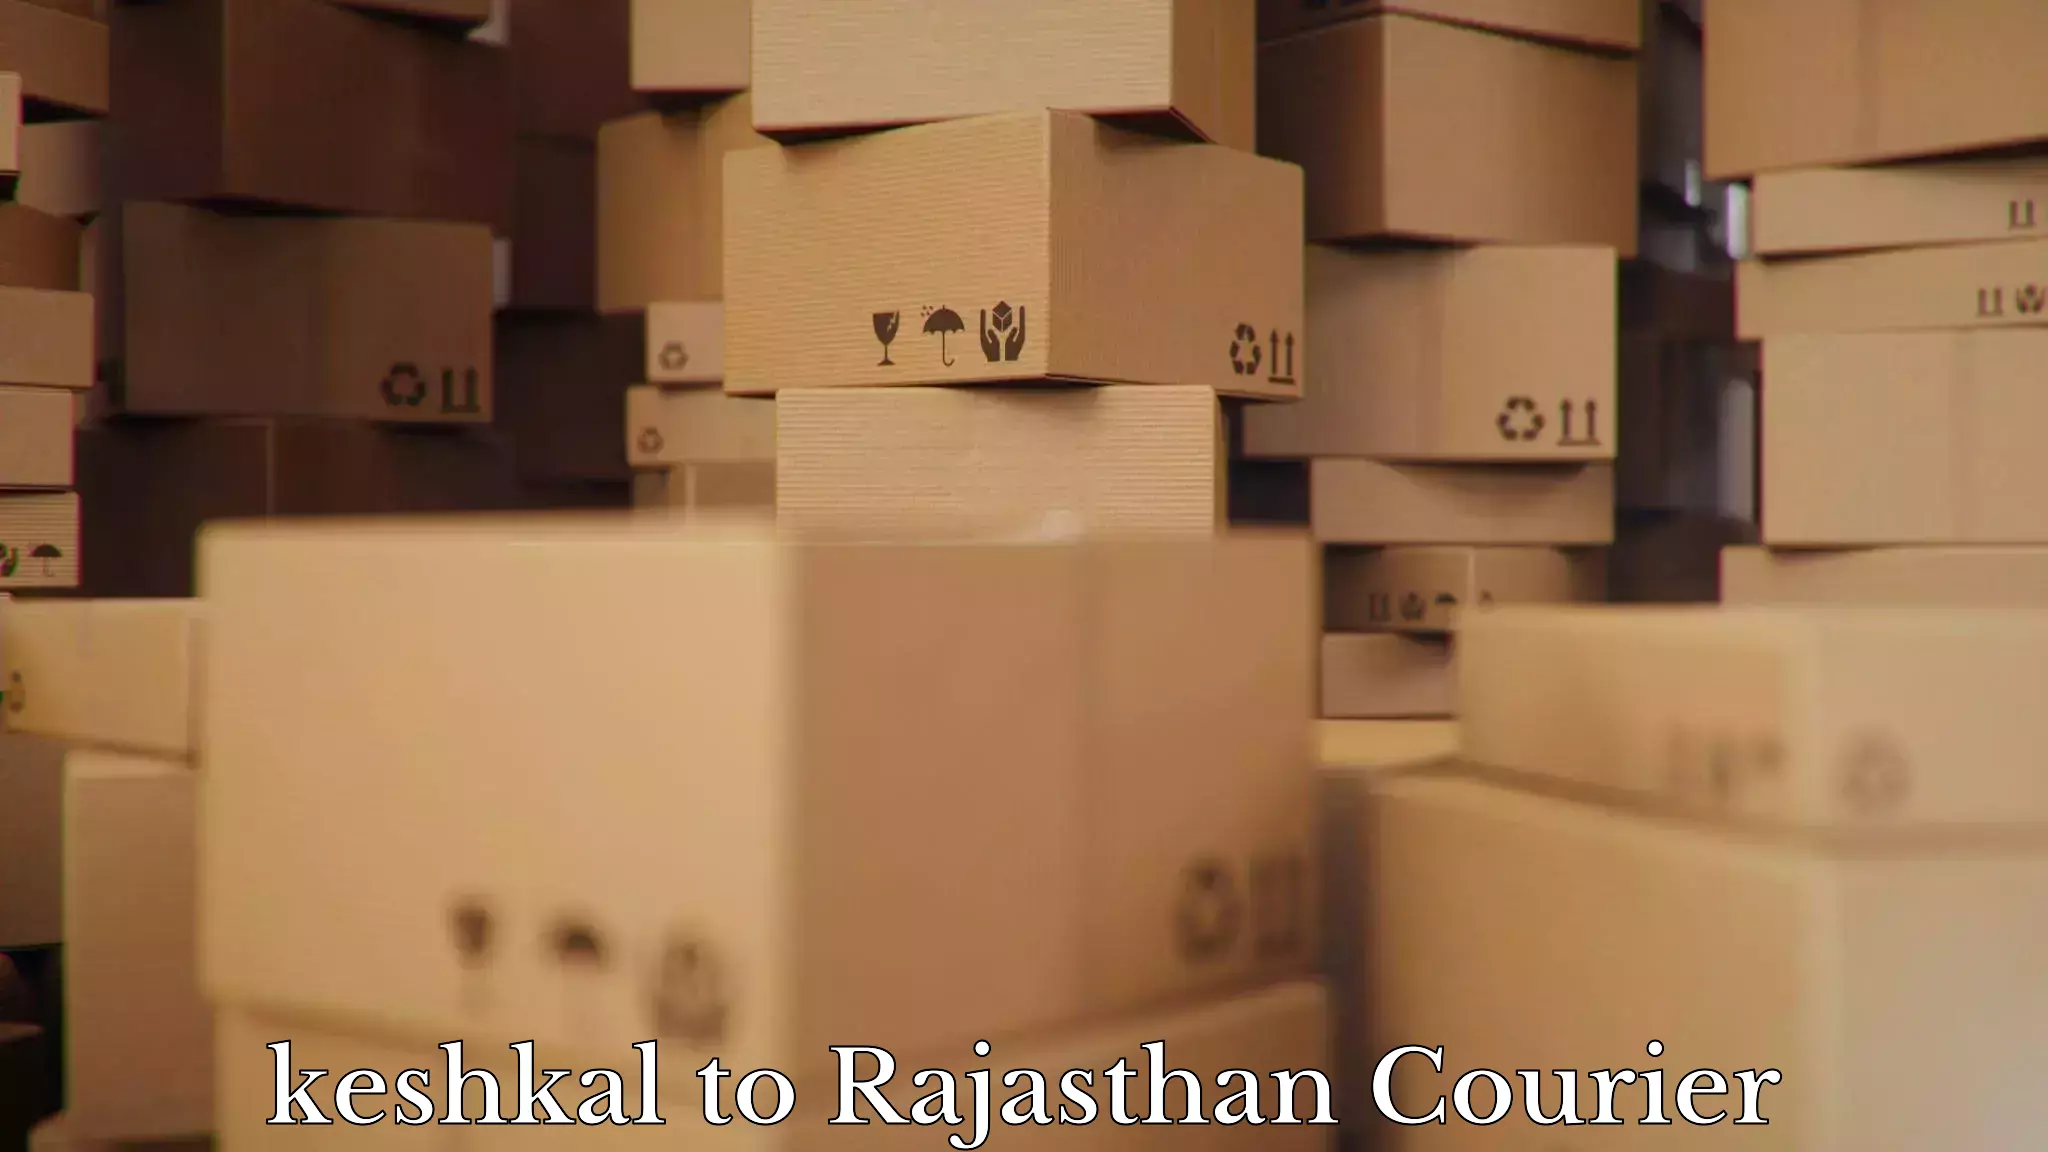 Professional moving company keshkal to Yathalakunta